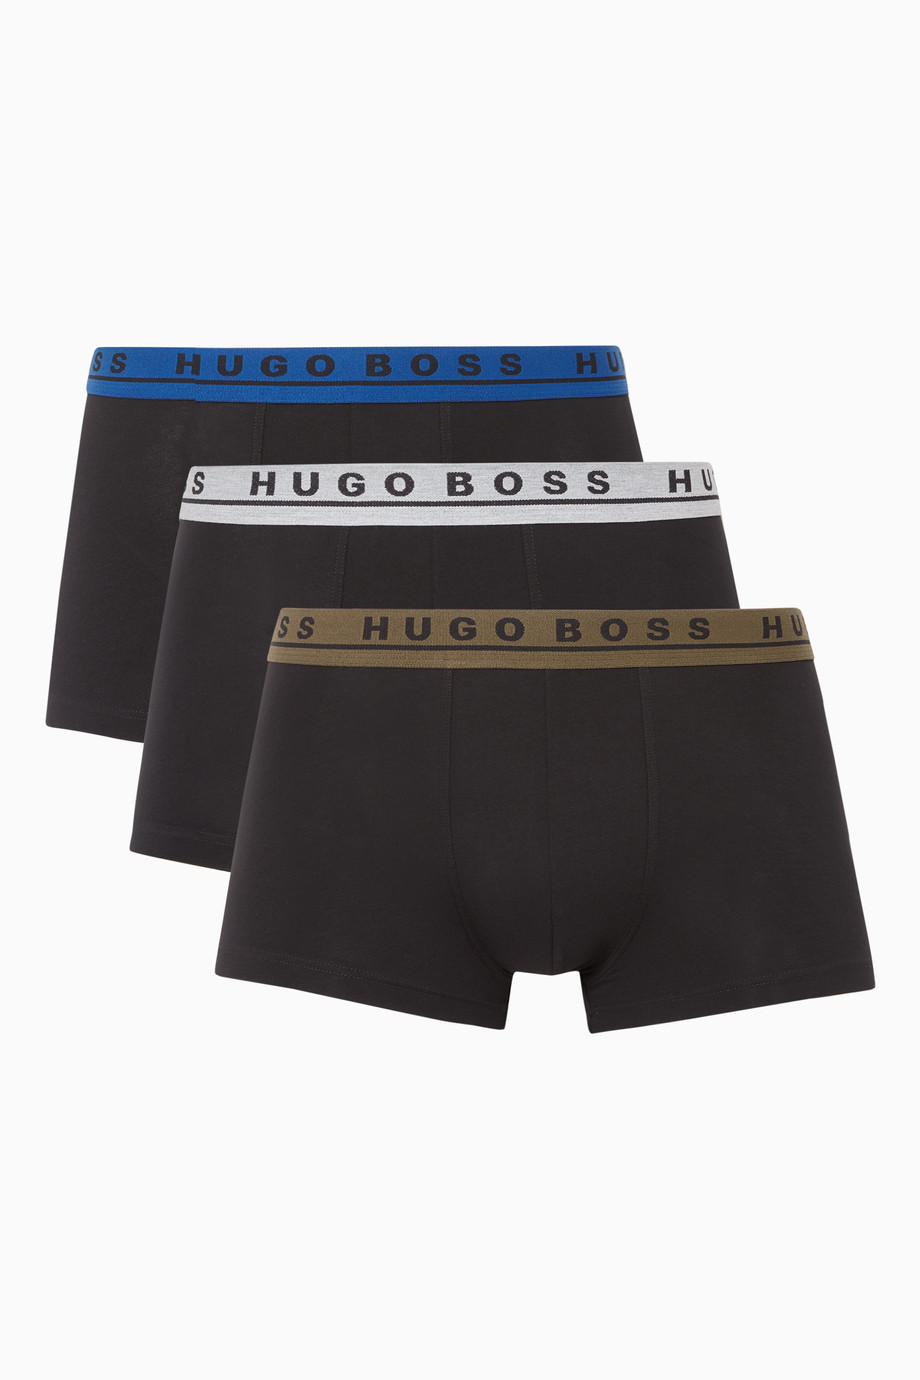 Hugo Boss Boxer Briefs Size Chart